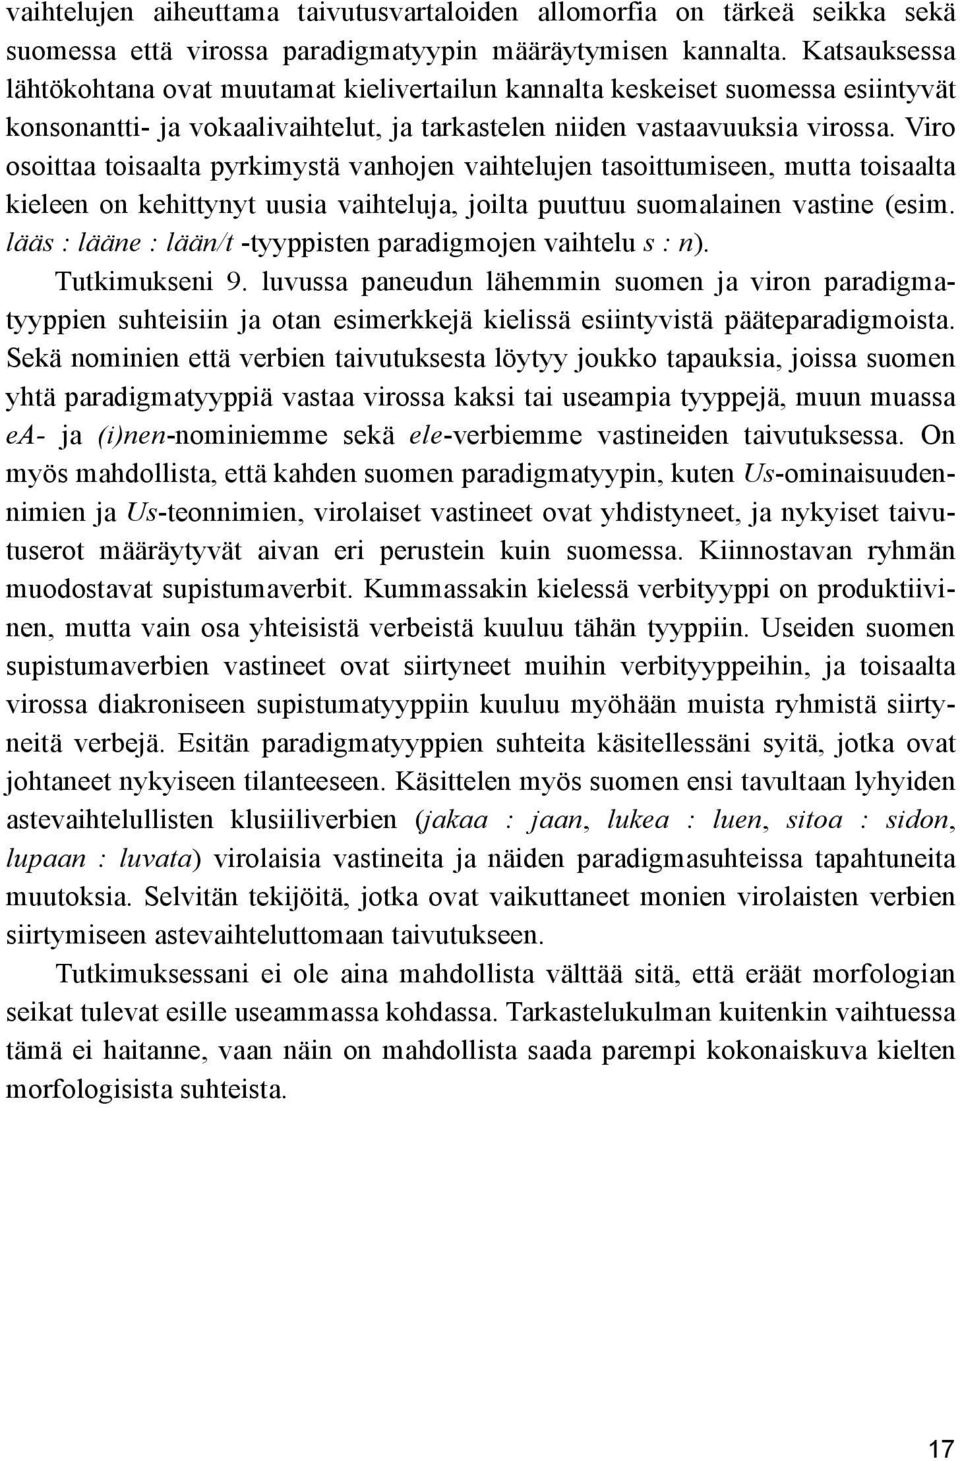 Viro osoittaa toisaalta pyrkimystä vanhojen vaihtelujen tasoittumiseen, mutta toisaalta kieleen on kehittynyt uusia vaihteluja, joilta puuttuu suomalainen vastine (esim.